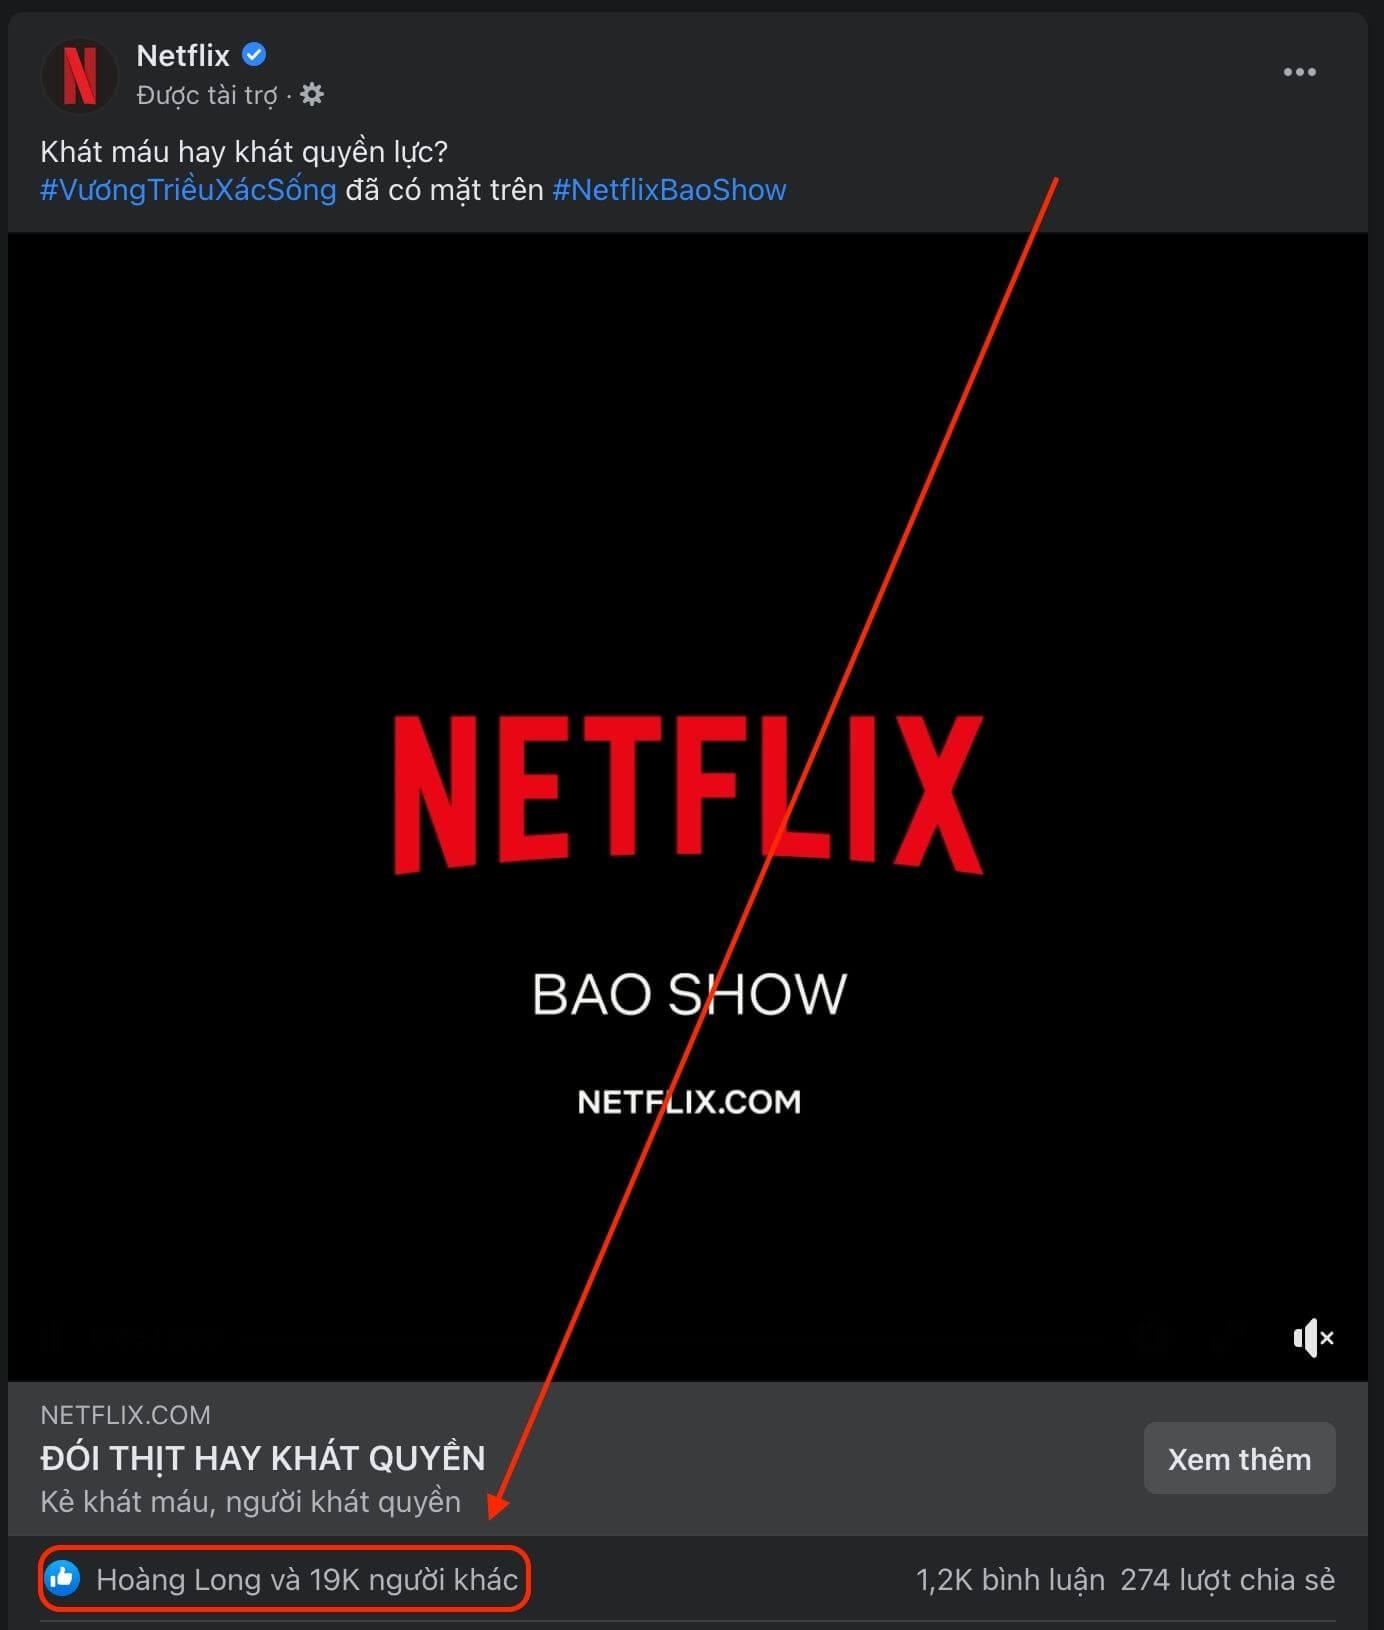 Mẫu quảng cáo của Netflix có nhiều lượt like